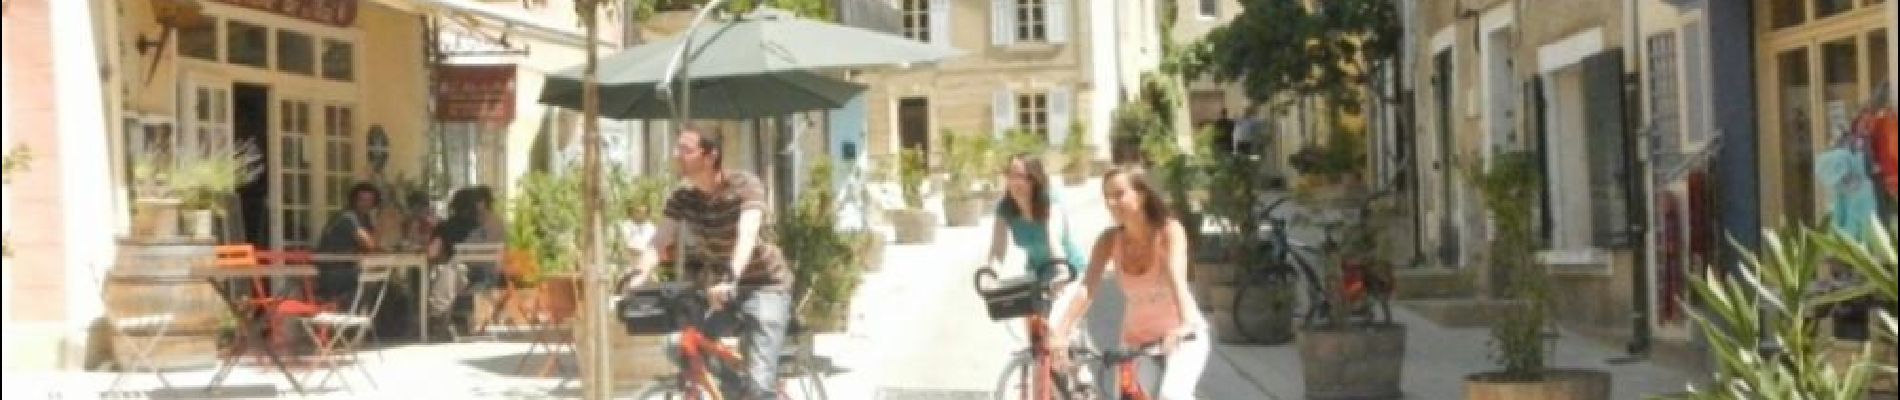 Trail Cycle La Tour-d'Aigues - Le Pays d'Aigues à vélo - Photo